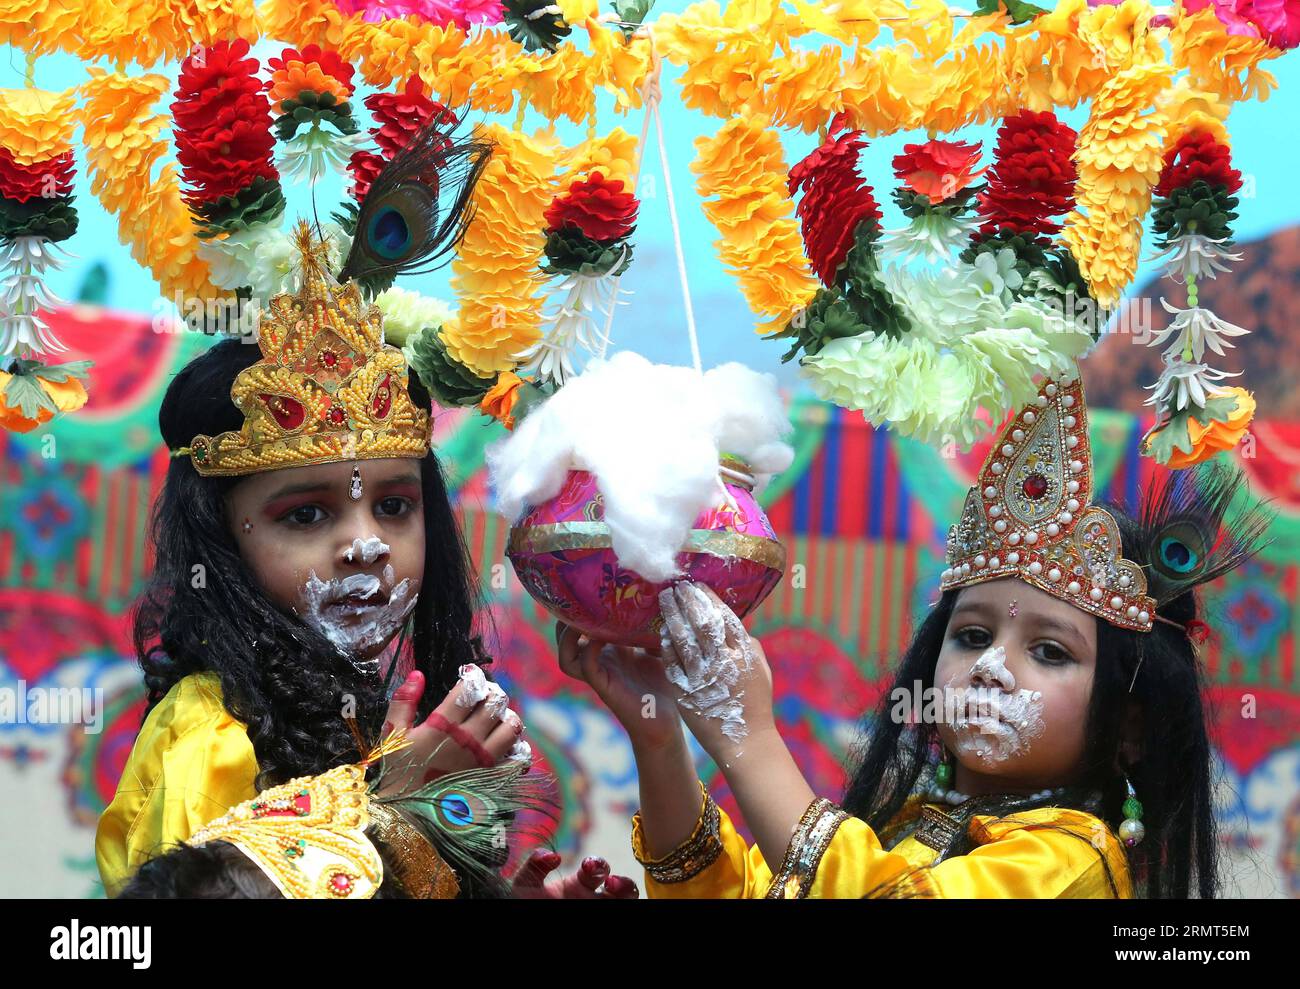 (140816) -- BHOPAL, 16. August 2014 -- Schulmädchen kleiden sich als Lord Krishna vor dem Janmashtami-Festival in Bhopal, Indien, am 16. August 2014. Das Festival, das am 18. August stattfindet, markiert die Geburt von Lord Krishna, einem der beliebtesten Götter des Hinduismus. INDIEN-BHOPAL-JANMASHTAMI FESTIVAL-VORBEREITUNG Stringer PUBLICATIONxNOTxINxCHN Bhopal 16. August 2014 Schulmädchen kleiden sich als Lord Krishna vor dem Janmashtami Festival Celebration in Bhopal Indien AM 16. August 2014 das Festival, das AM 18. August stattfindet, ist die Geburt von Lord Krishna einer der Hinduism S Most Popular Gods India BHO Stockfoto